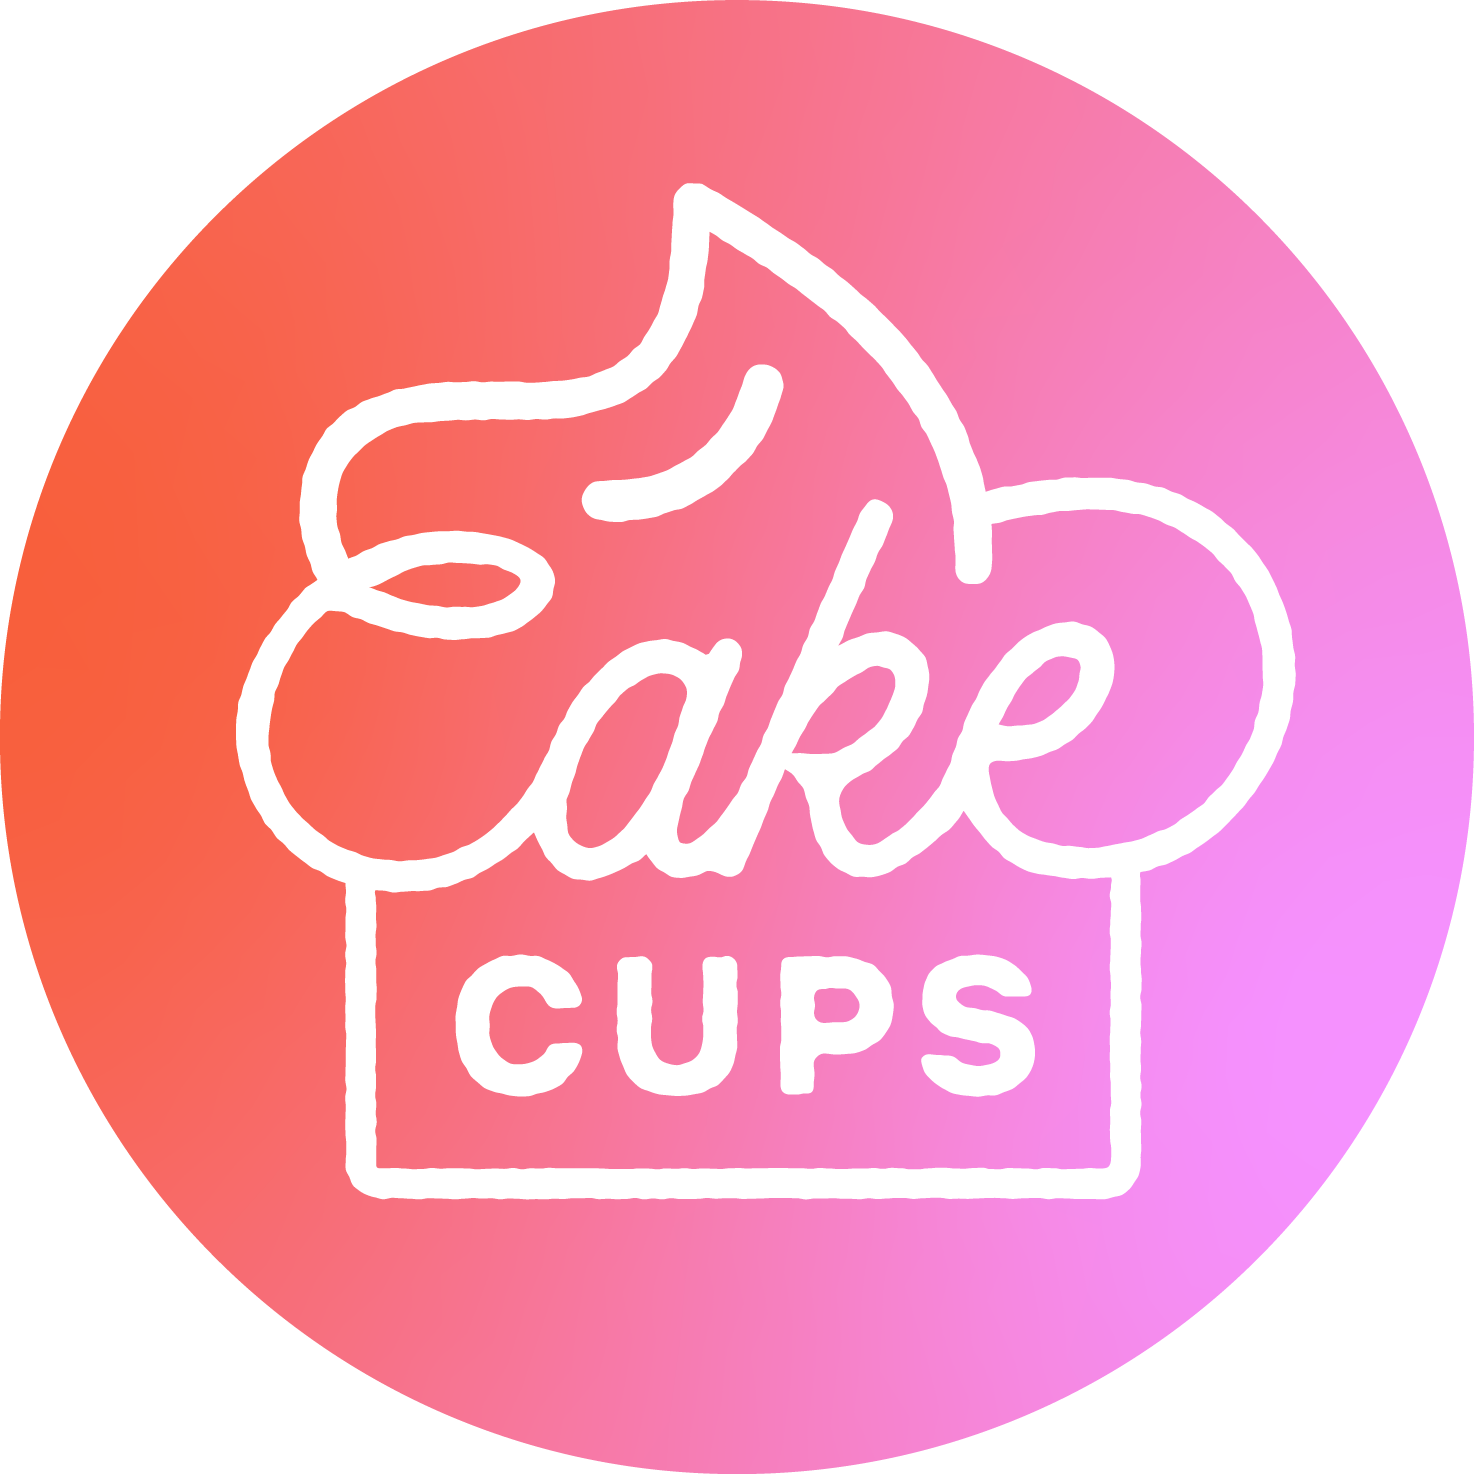 Cakecups